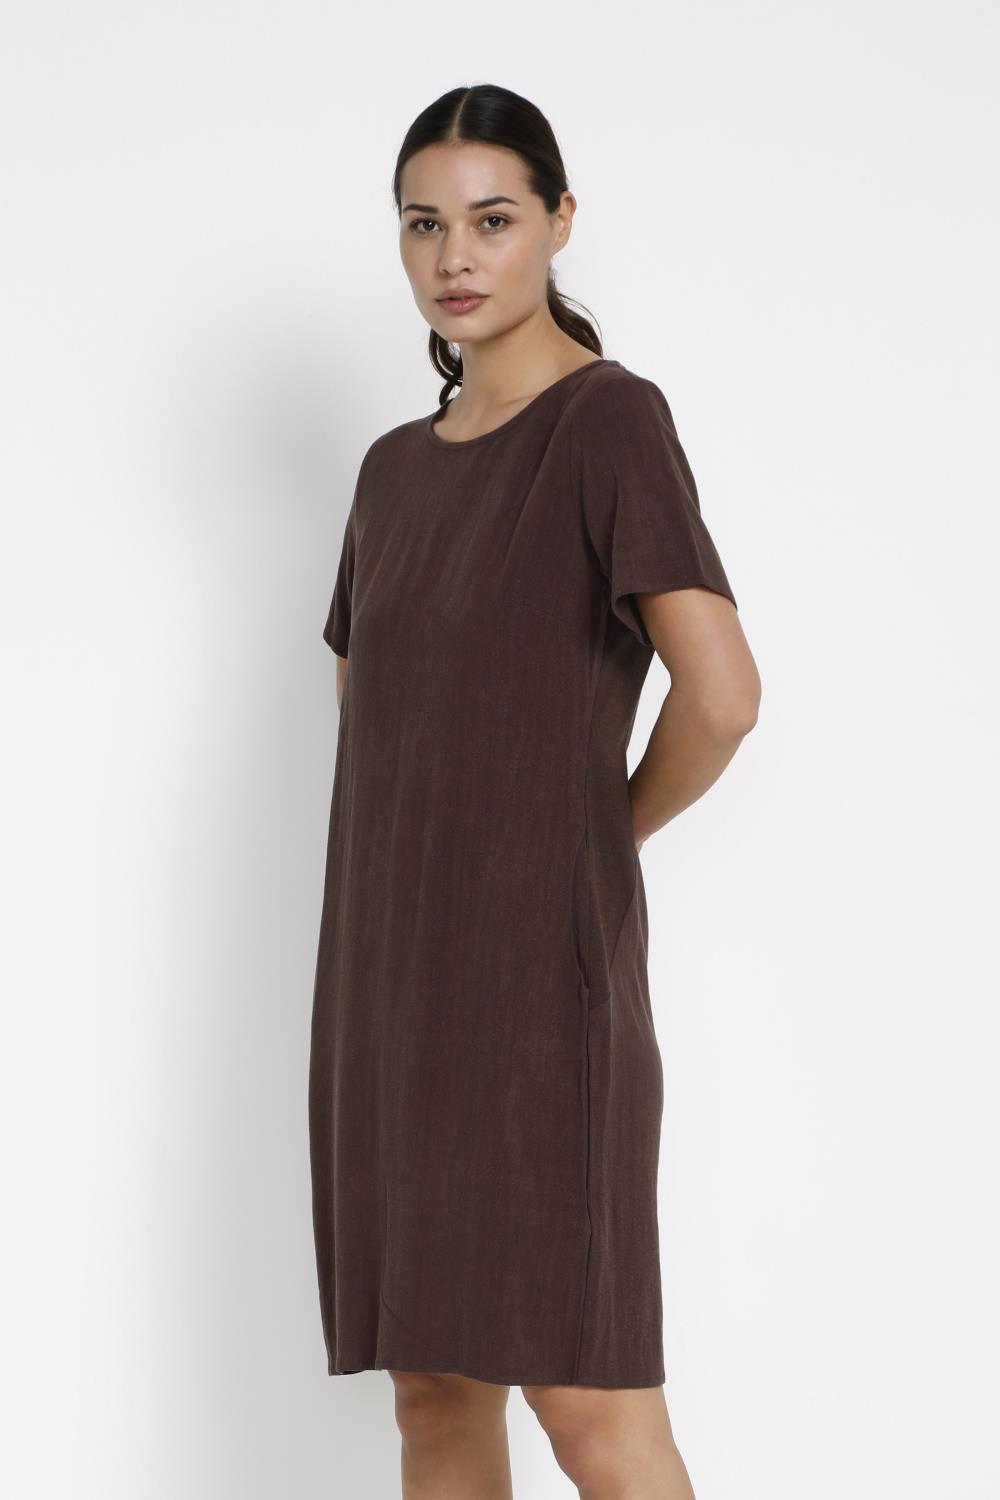 Kaffe Liny Dress, brun viskose/lin kjole